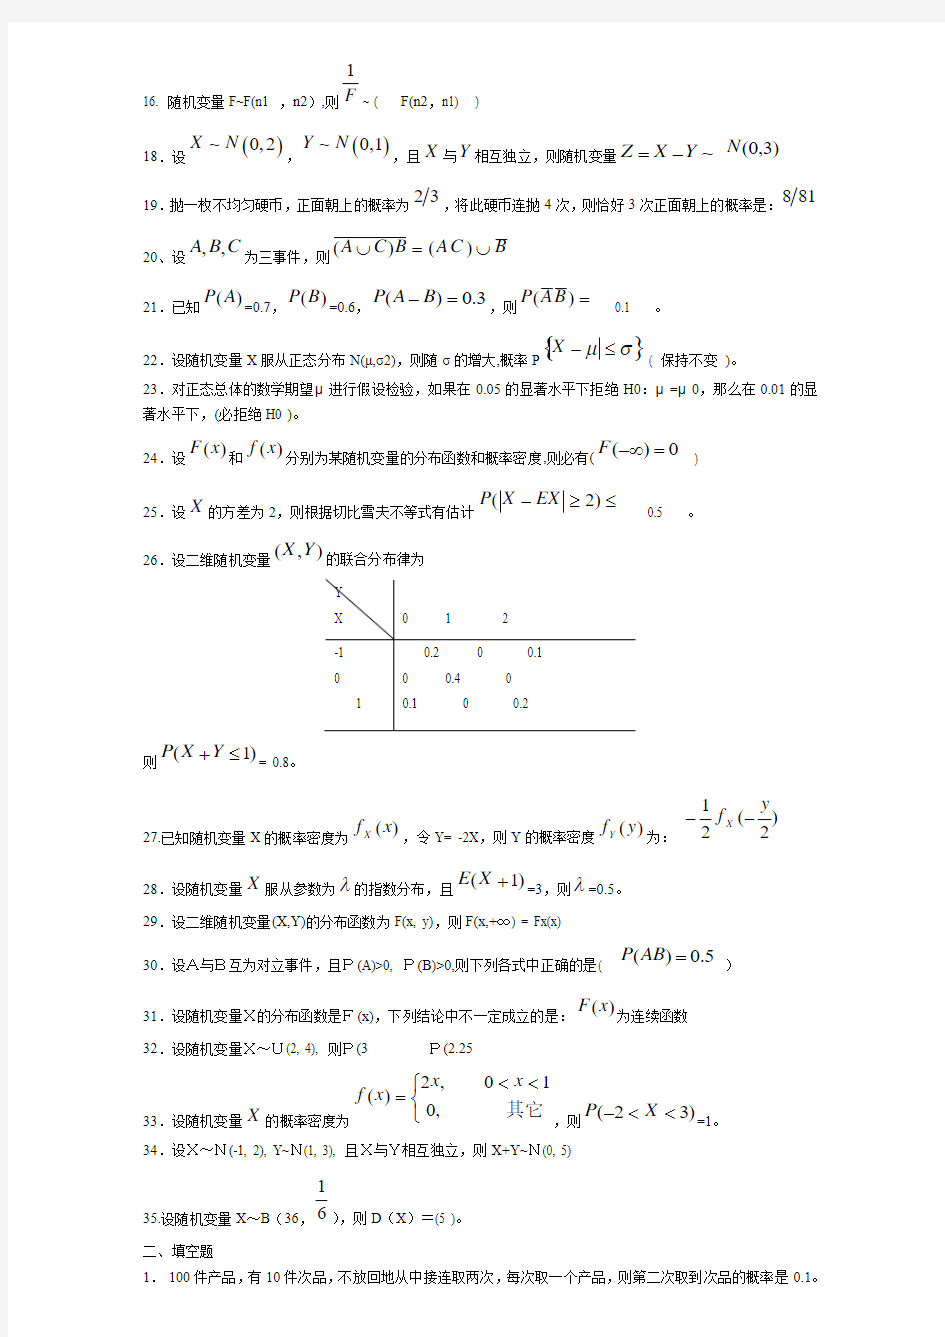 2014年4月04183概率论与数理统计考前精简资料(必下)